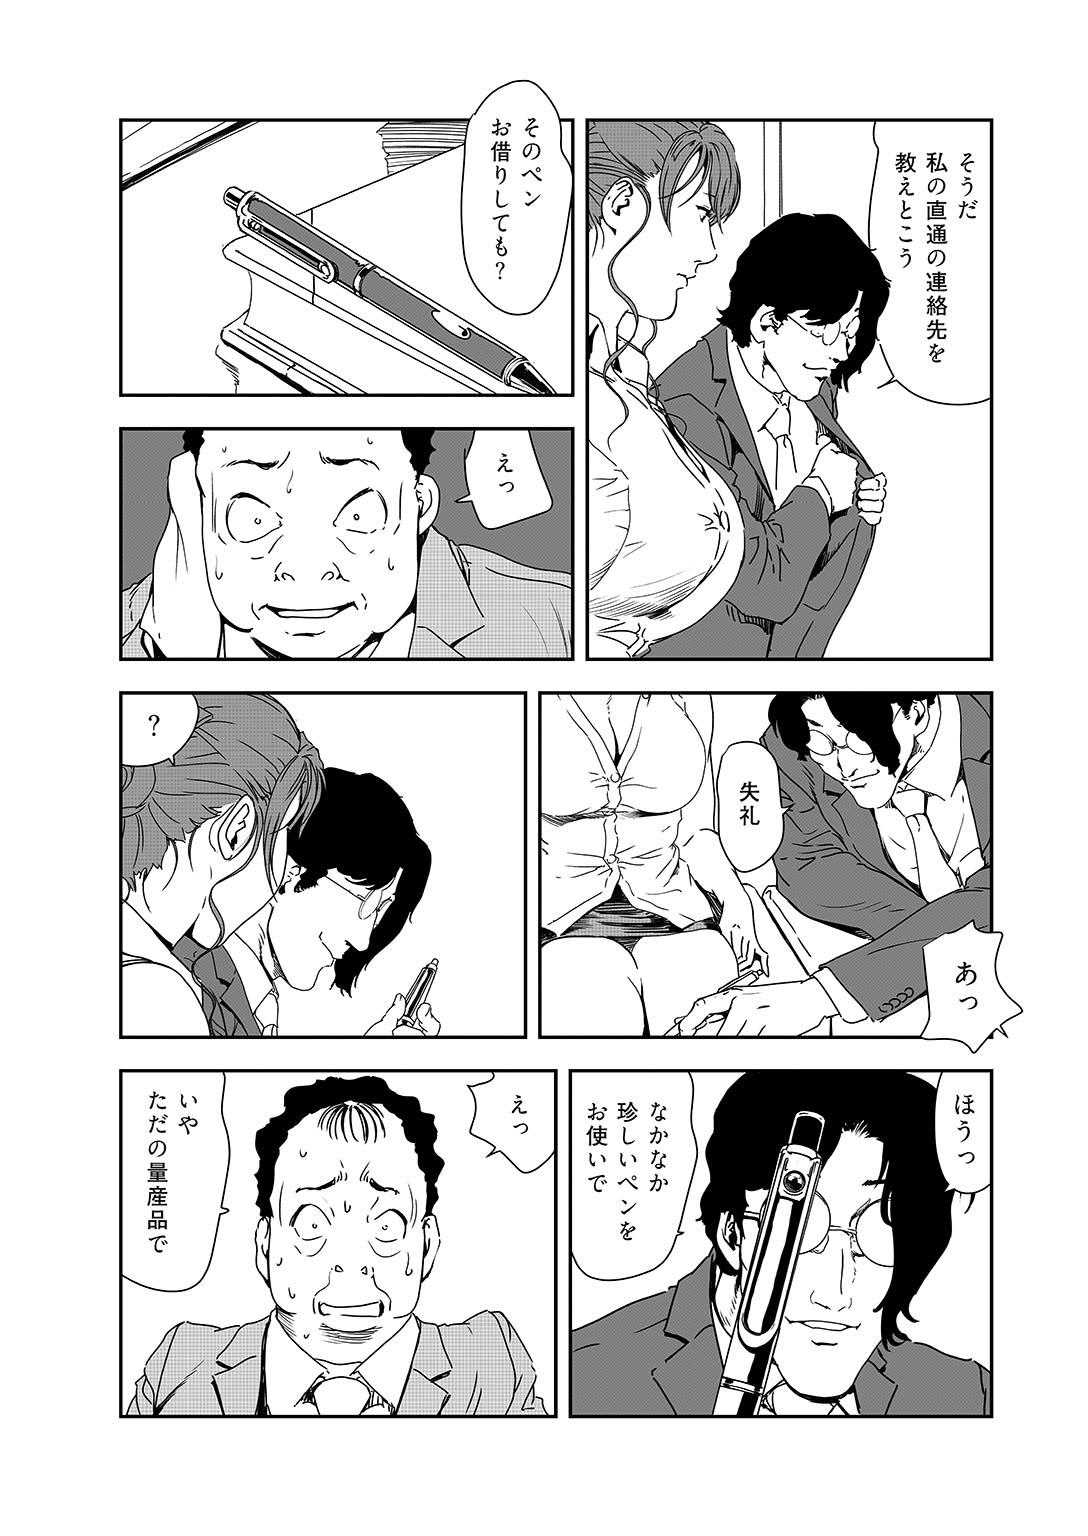 Sextoy Nikuhisyo Yukiko 38 Blow Jobs - Page 4